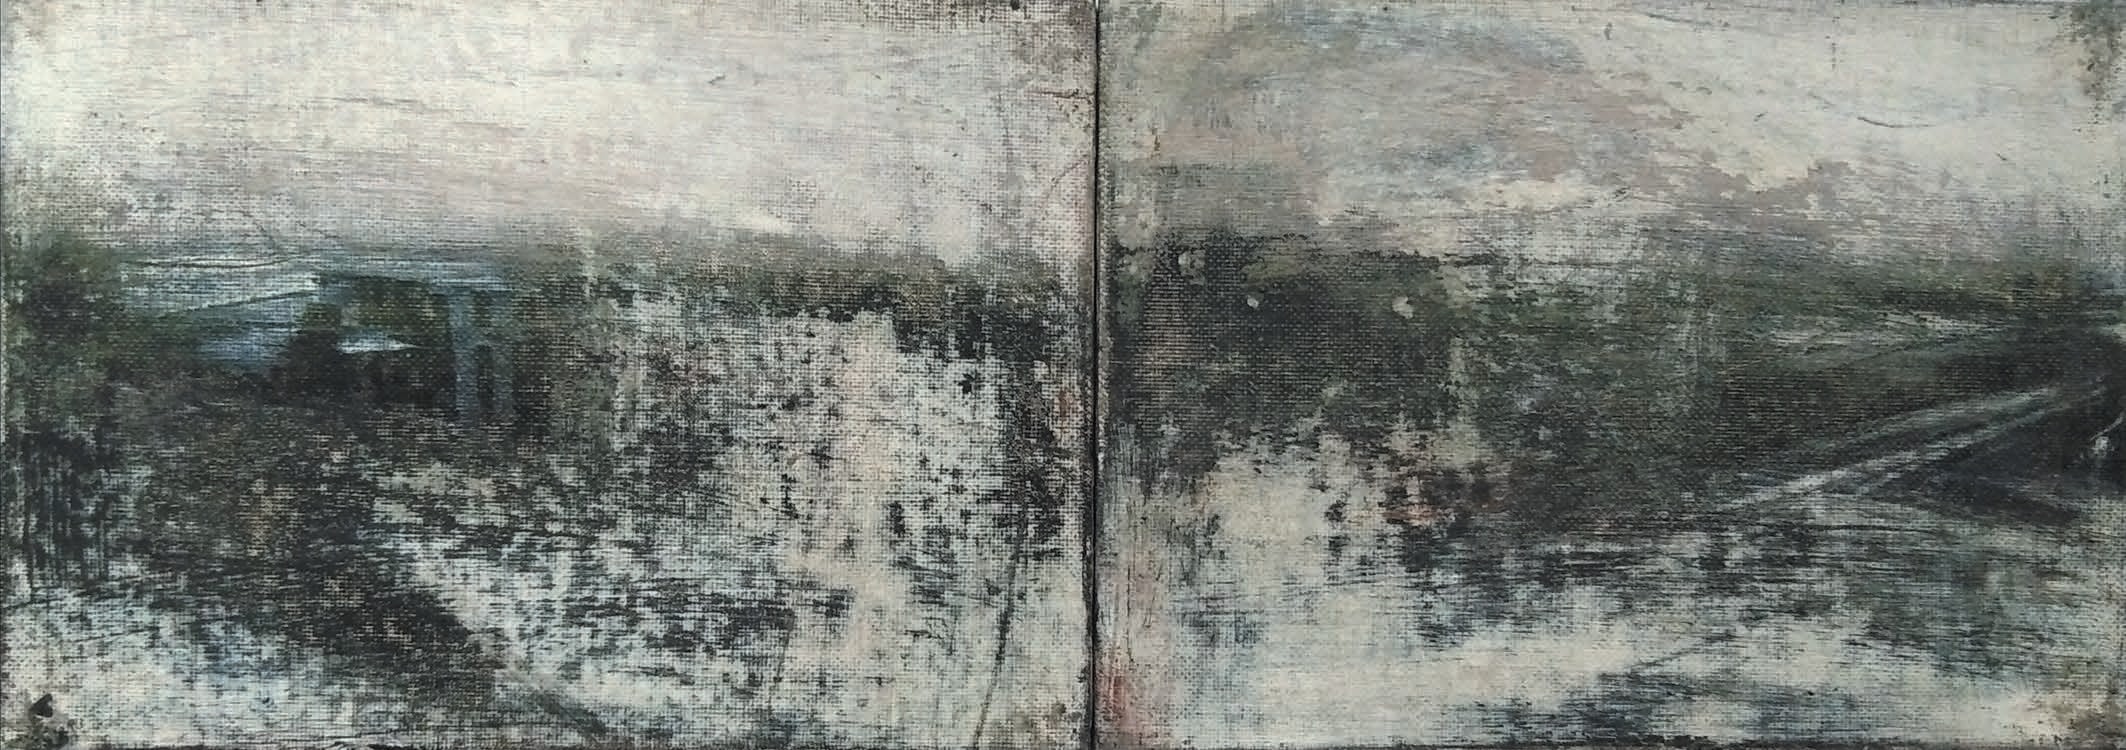 Massimo Romani, Landscape (1) - 2019 - olio su cartone telato - 13 x 36 cm